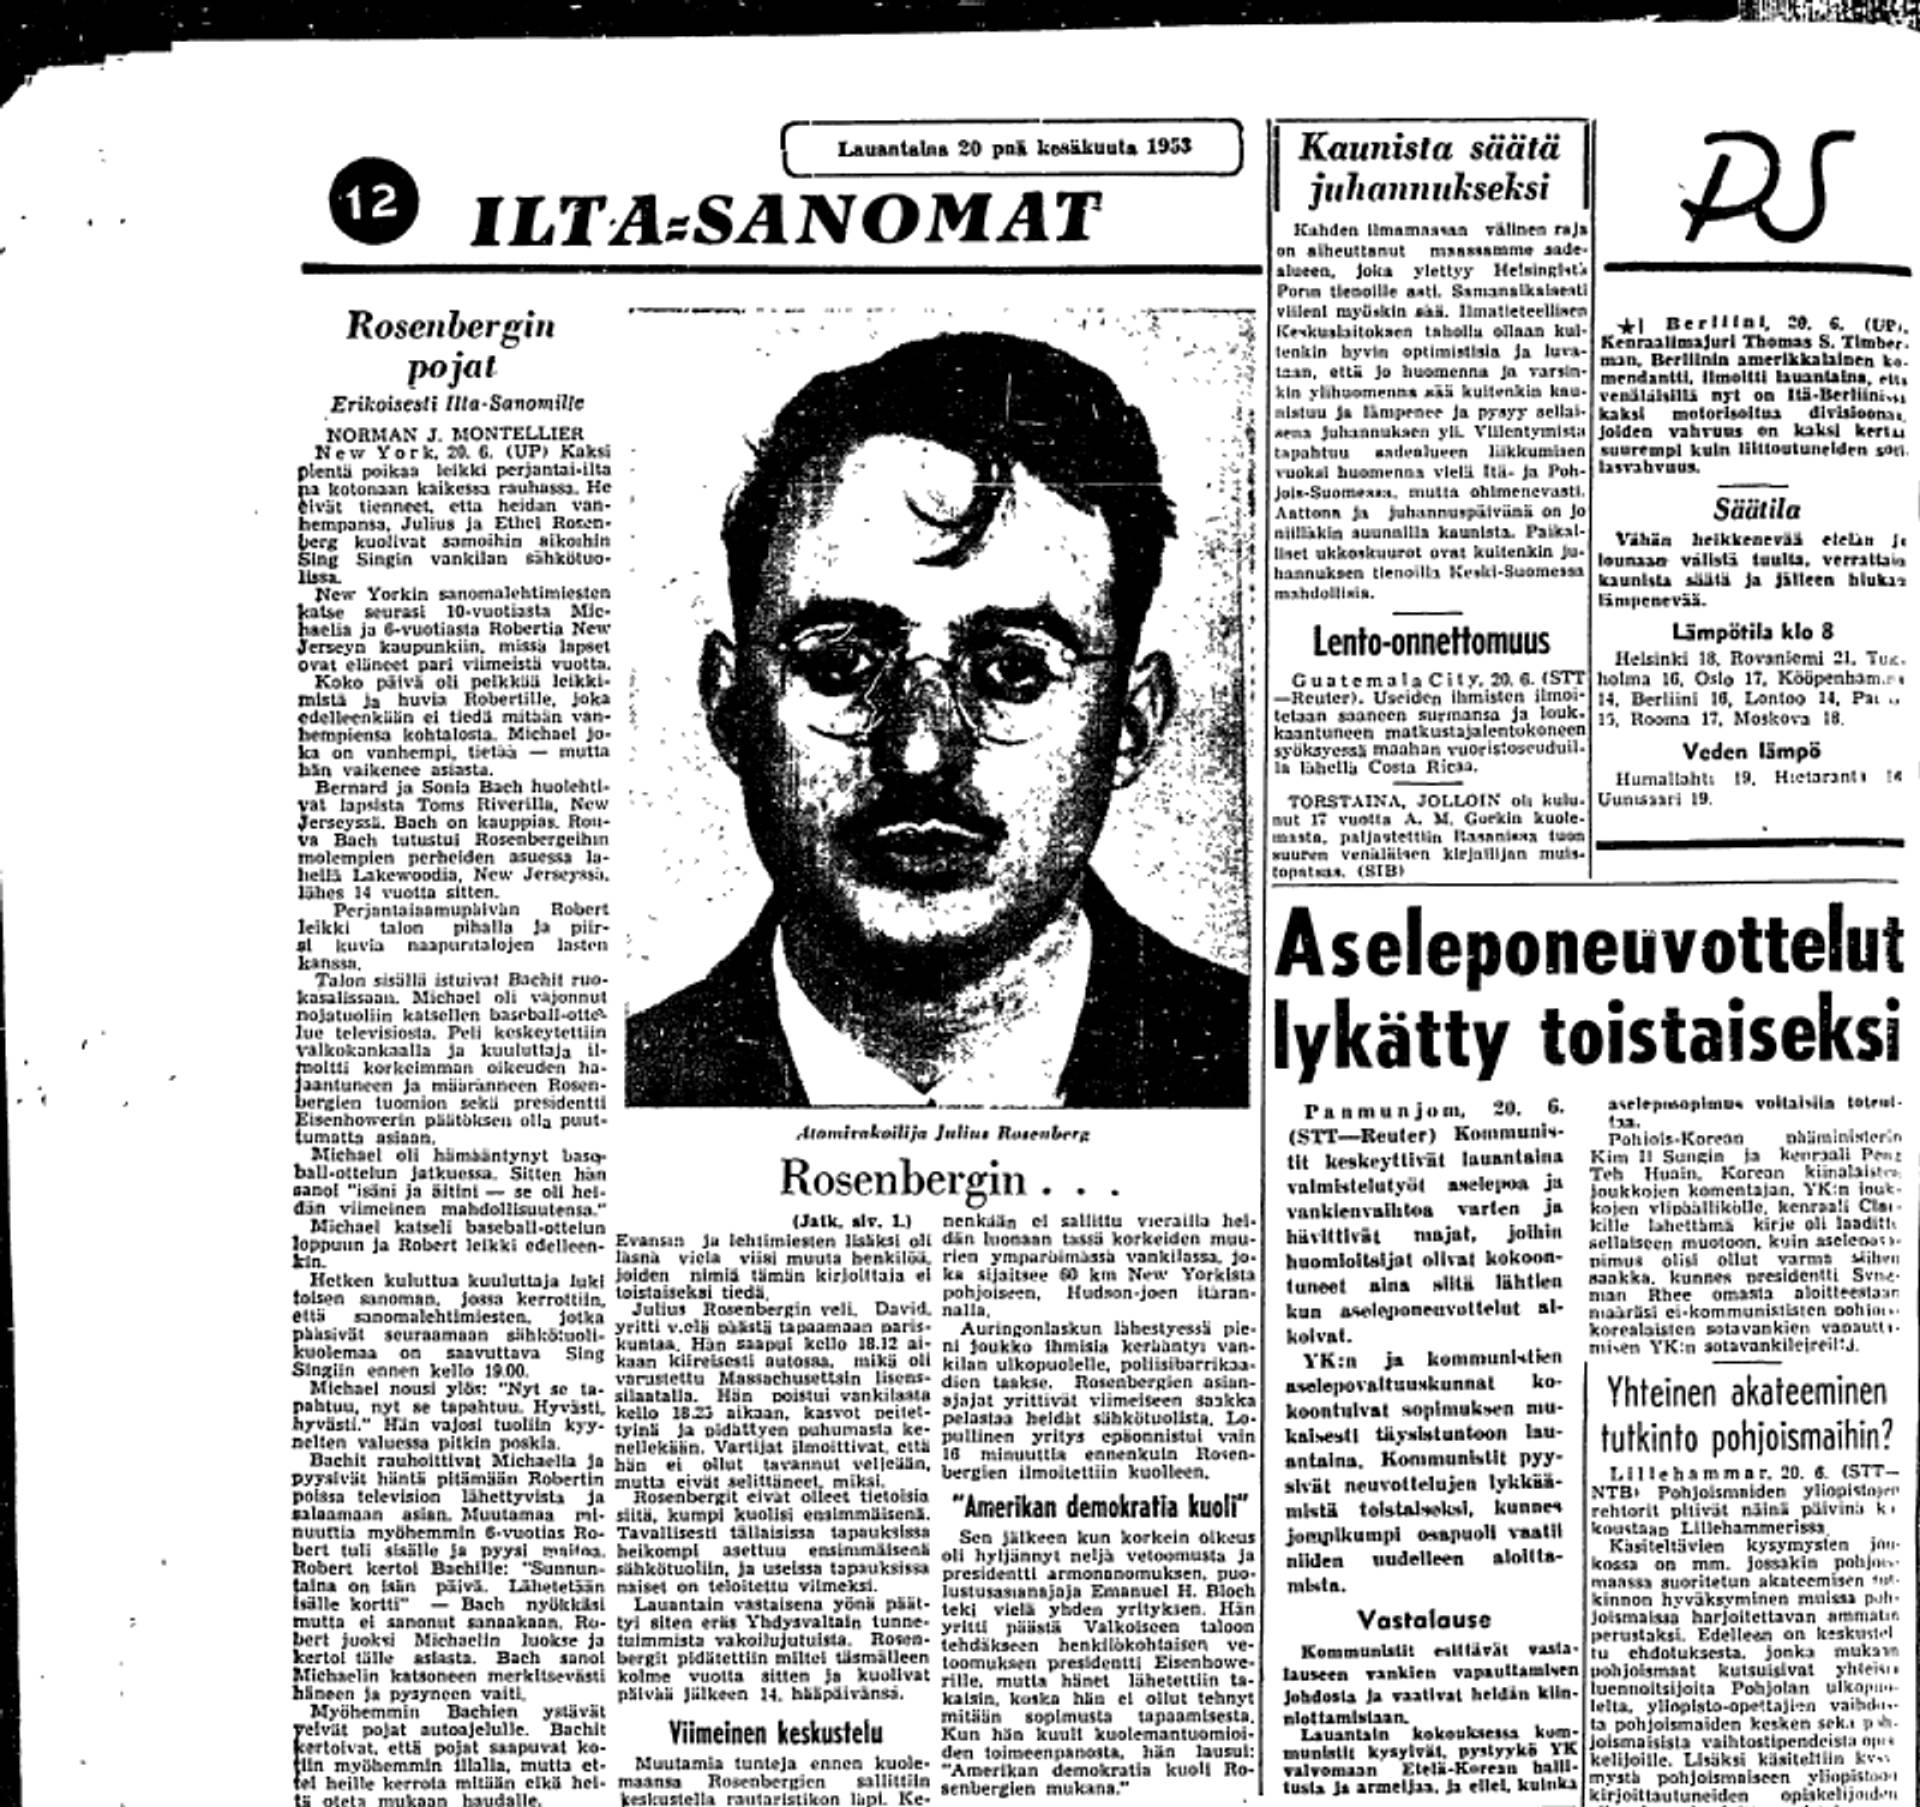 Ilta-Sanomat uutisoi Rosenbergien viimeisistä hetkistä 20. kesäkuuta 1953.